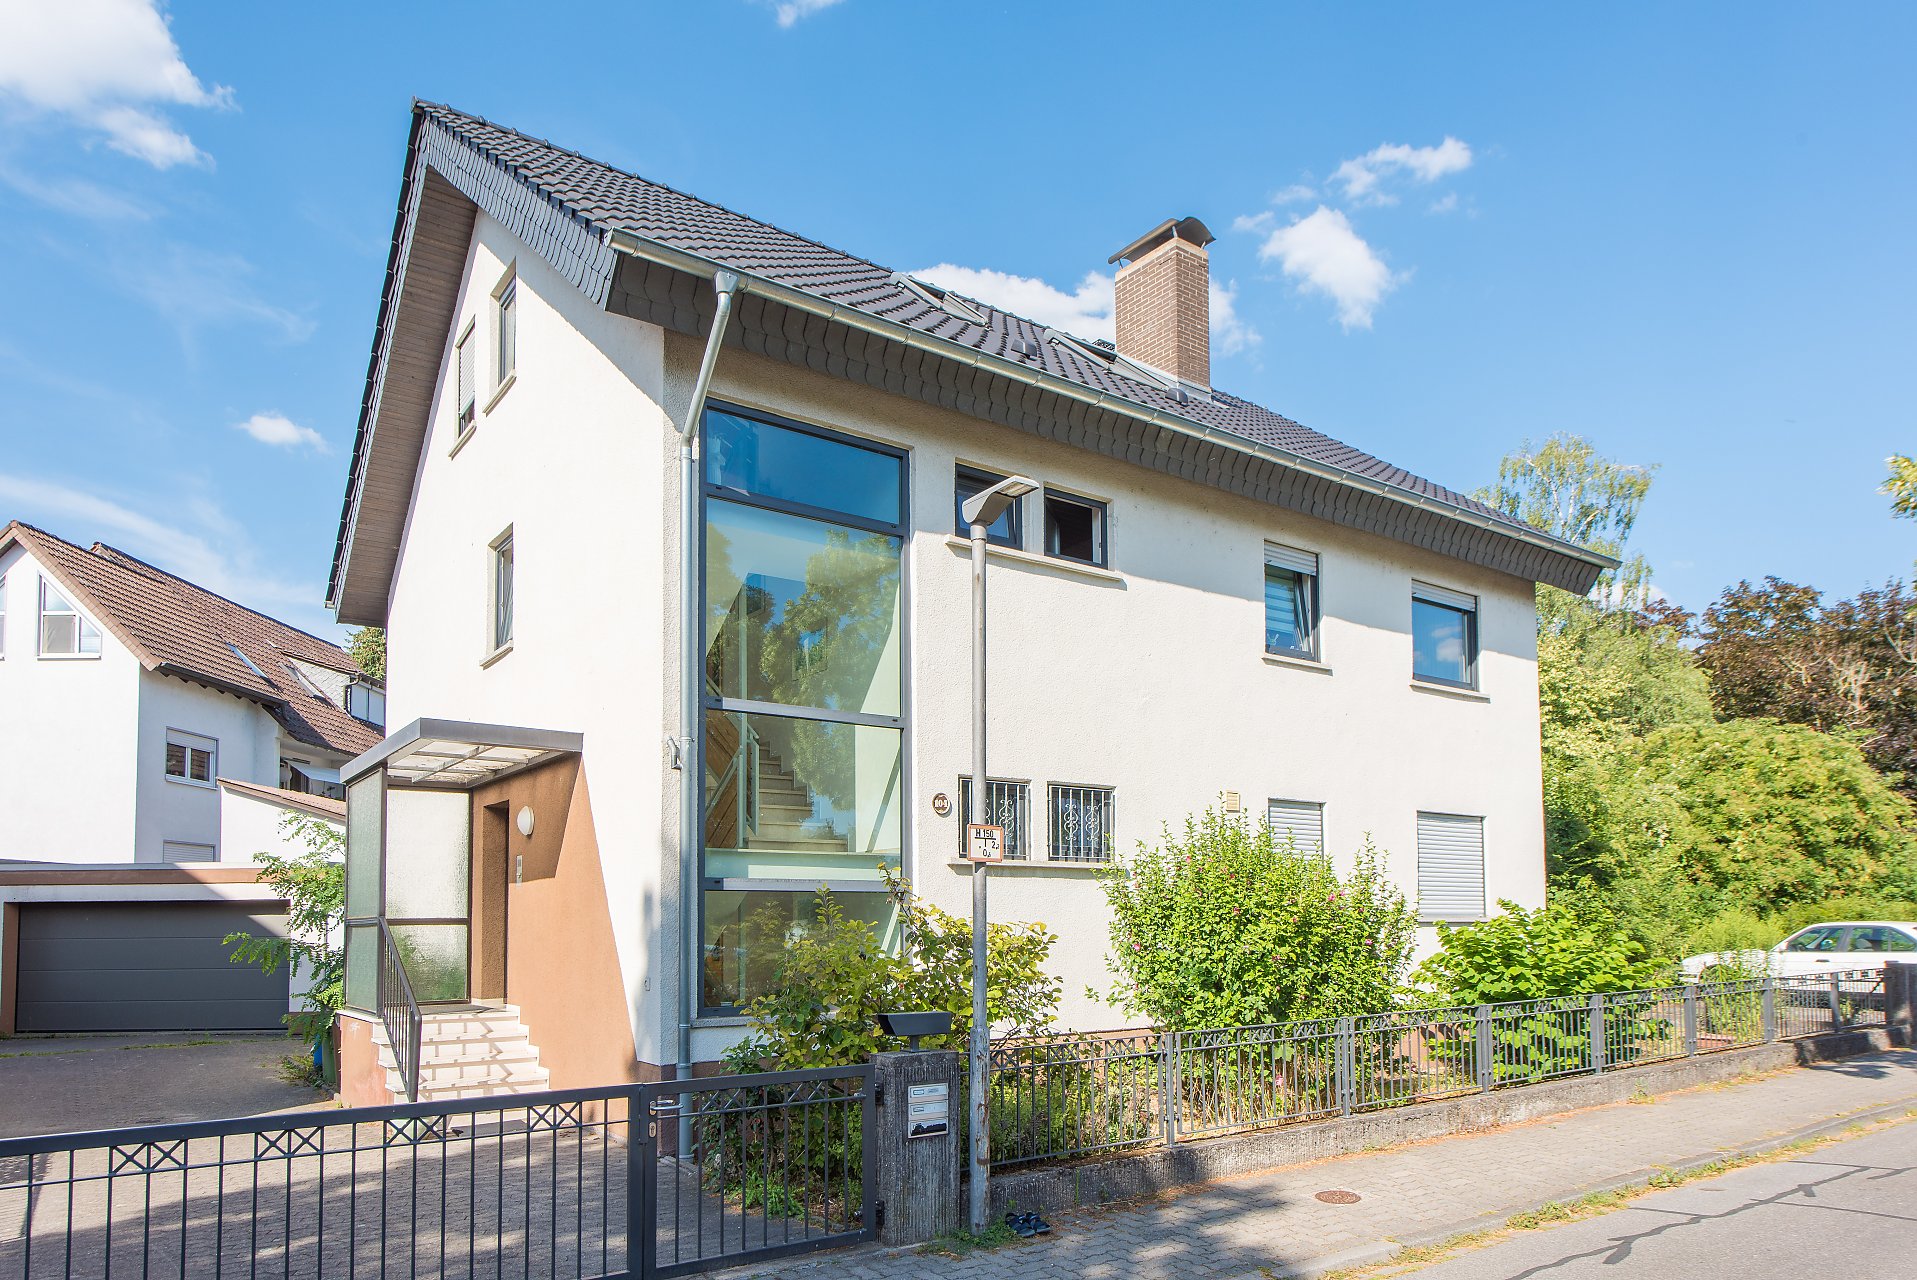 Bensheim 3 Familienhaus zum selbst nutzen, oder Kapitalanlage, umfangreich saniert, schöne Grundrisse - Oliver Reifferscheid - Immobilienmakler Darmstadt